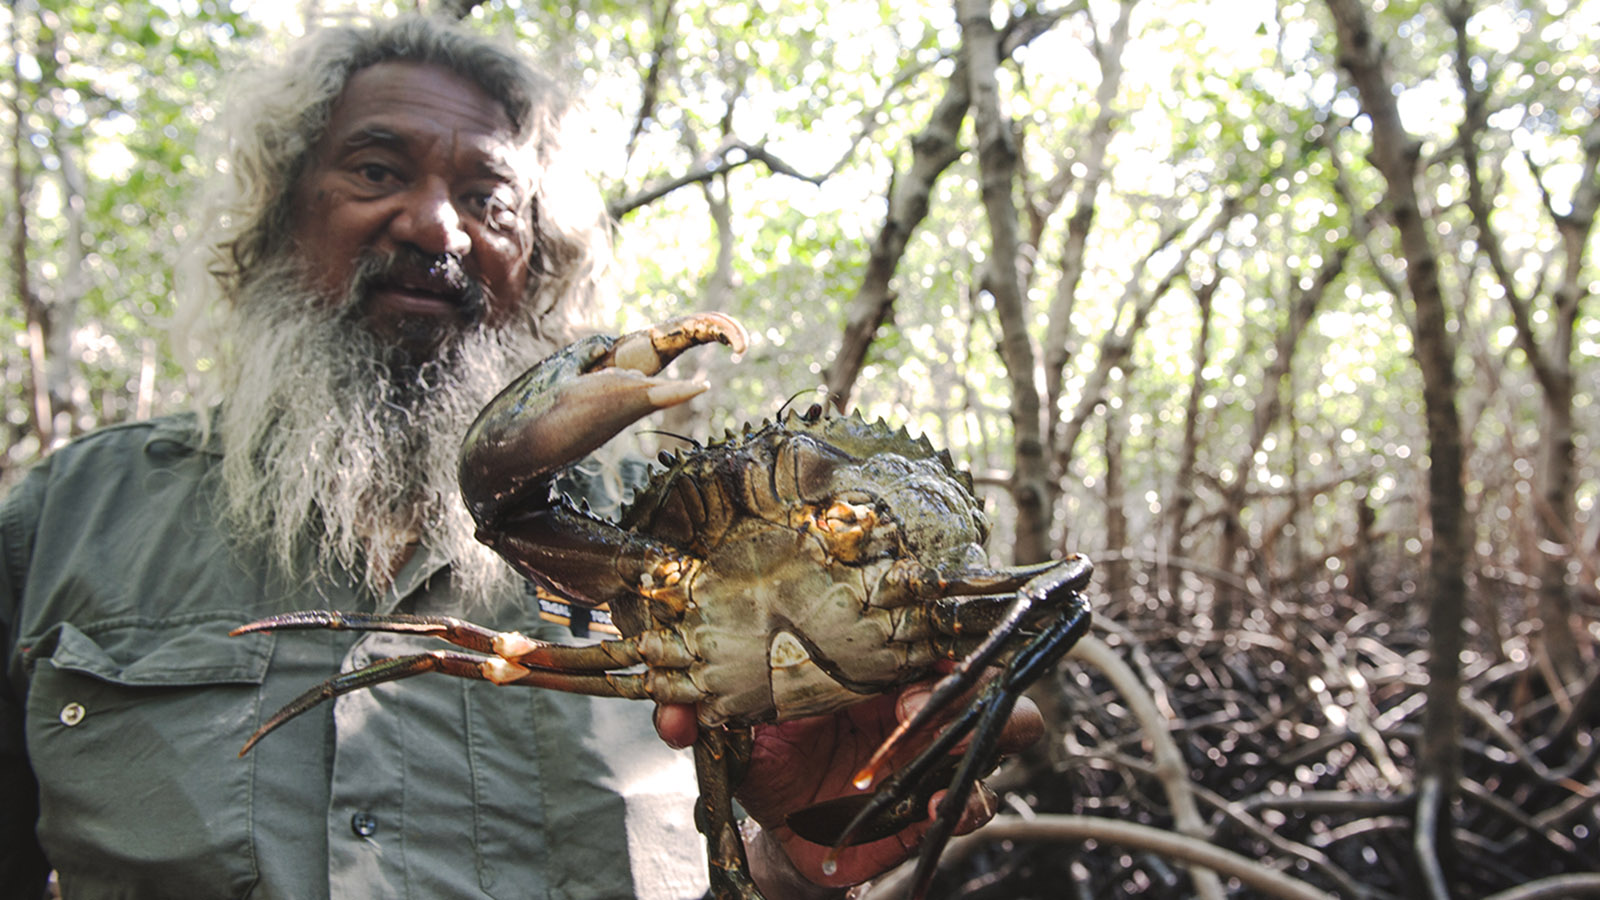 Mudcrabbing & mehr: Brian Lee hat im Morast der Mangroven die erste Schlammkrabbe gefunden. Foto: Hilke Maunder